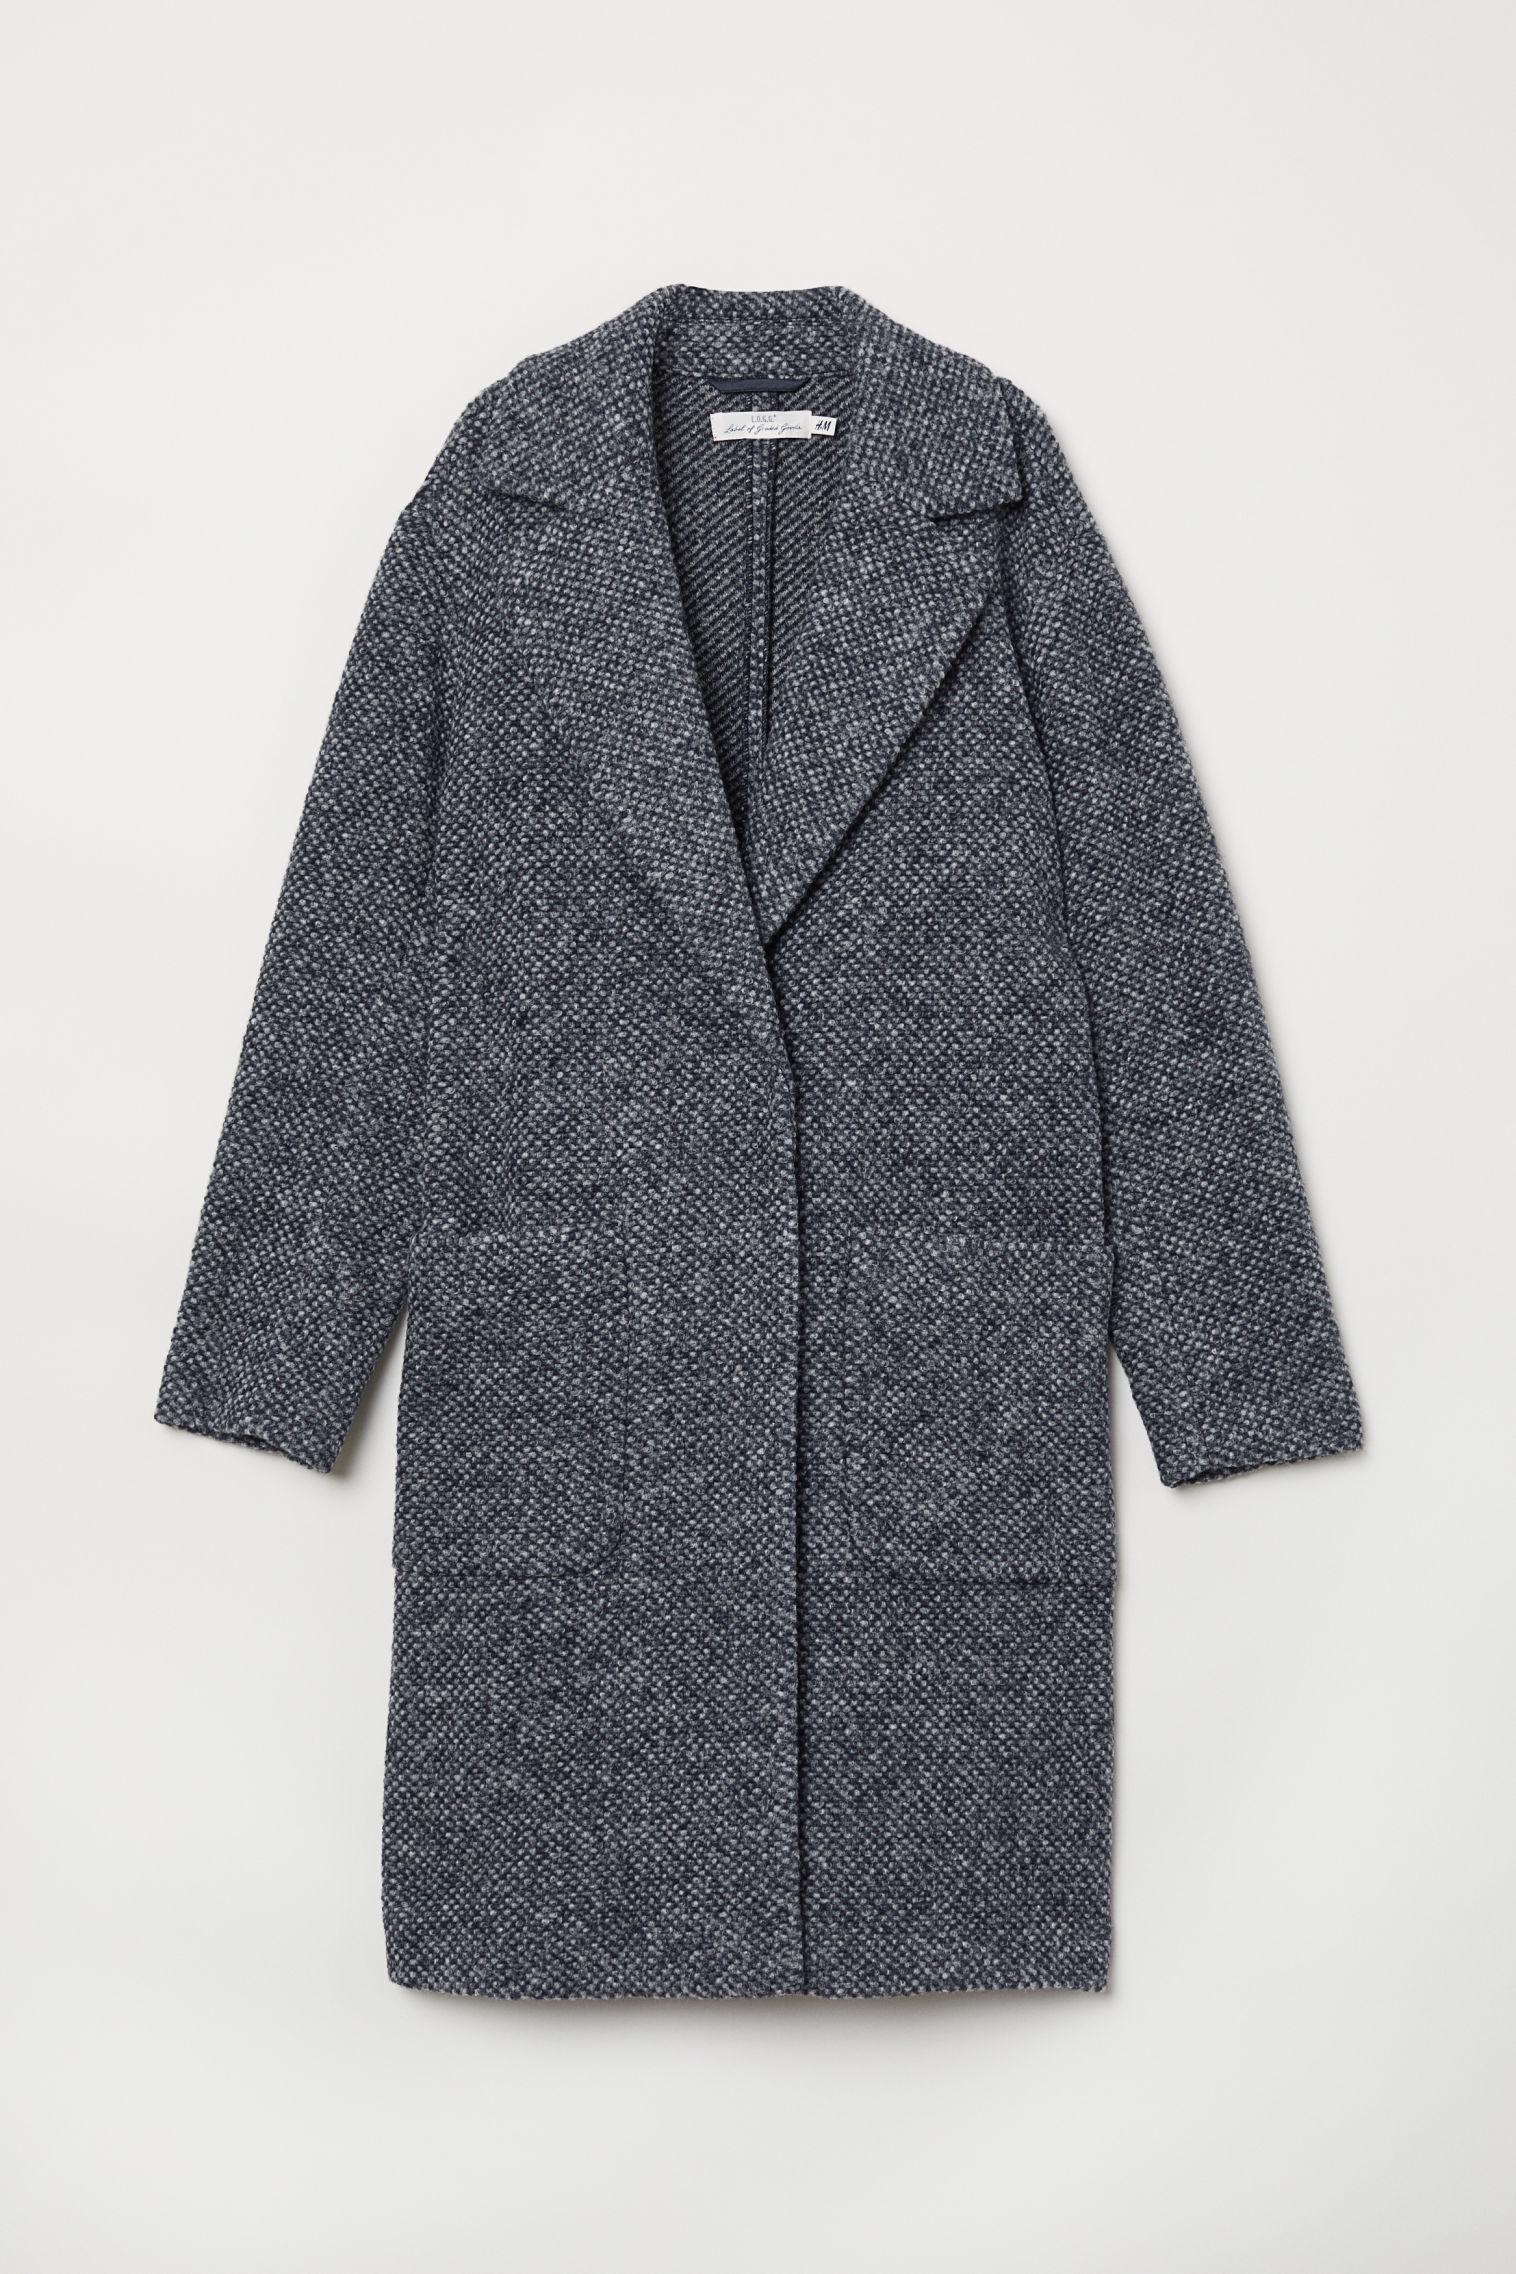 Отзыв на Вязание пальто шерстяные из Интернет-Магазина H&M